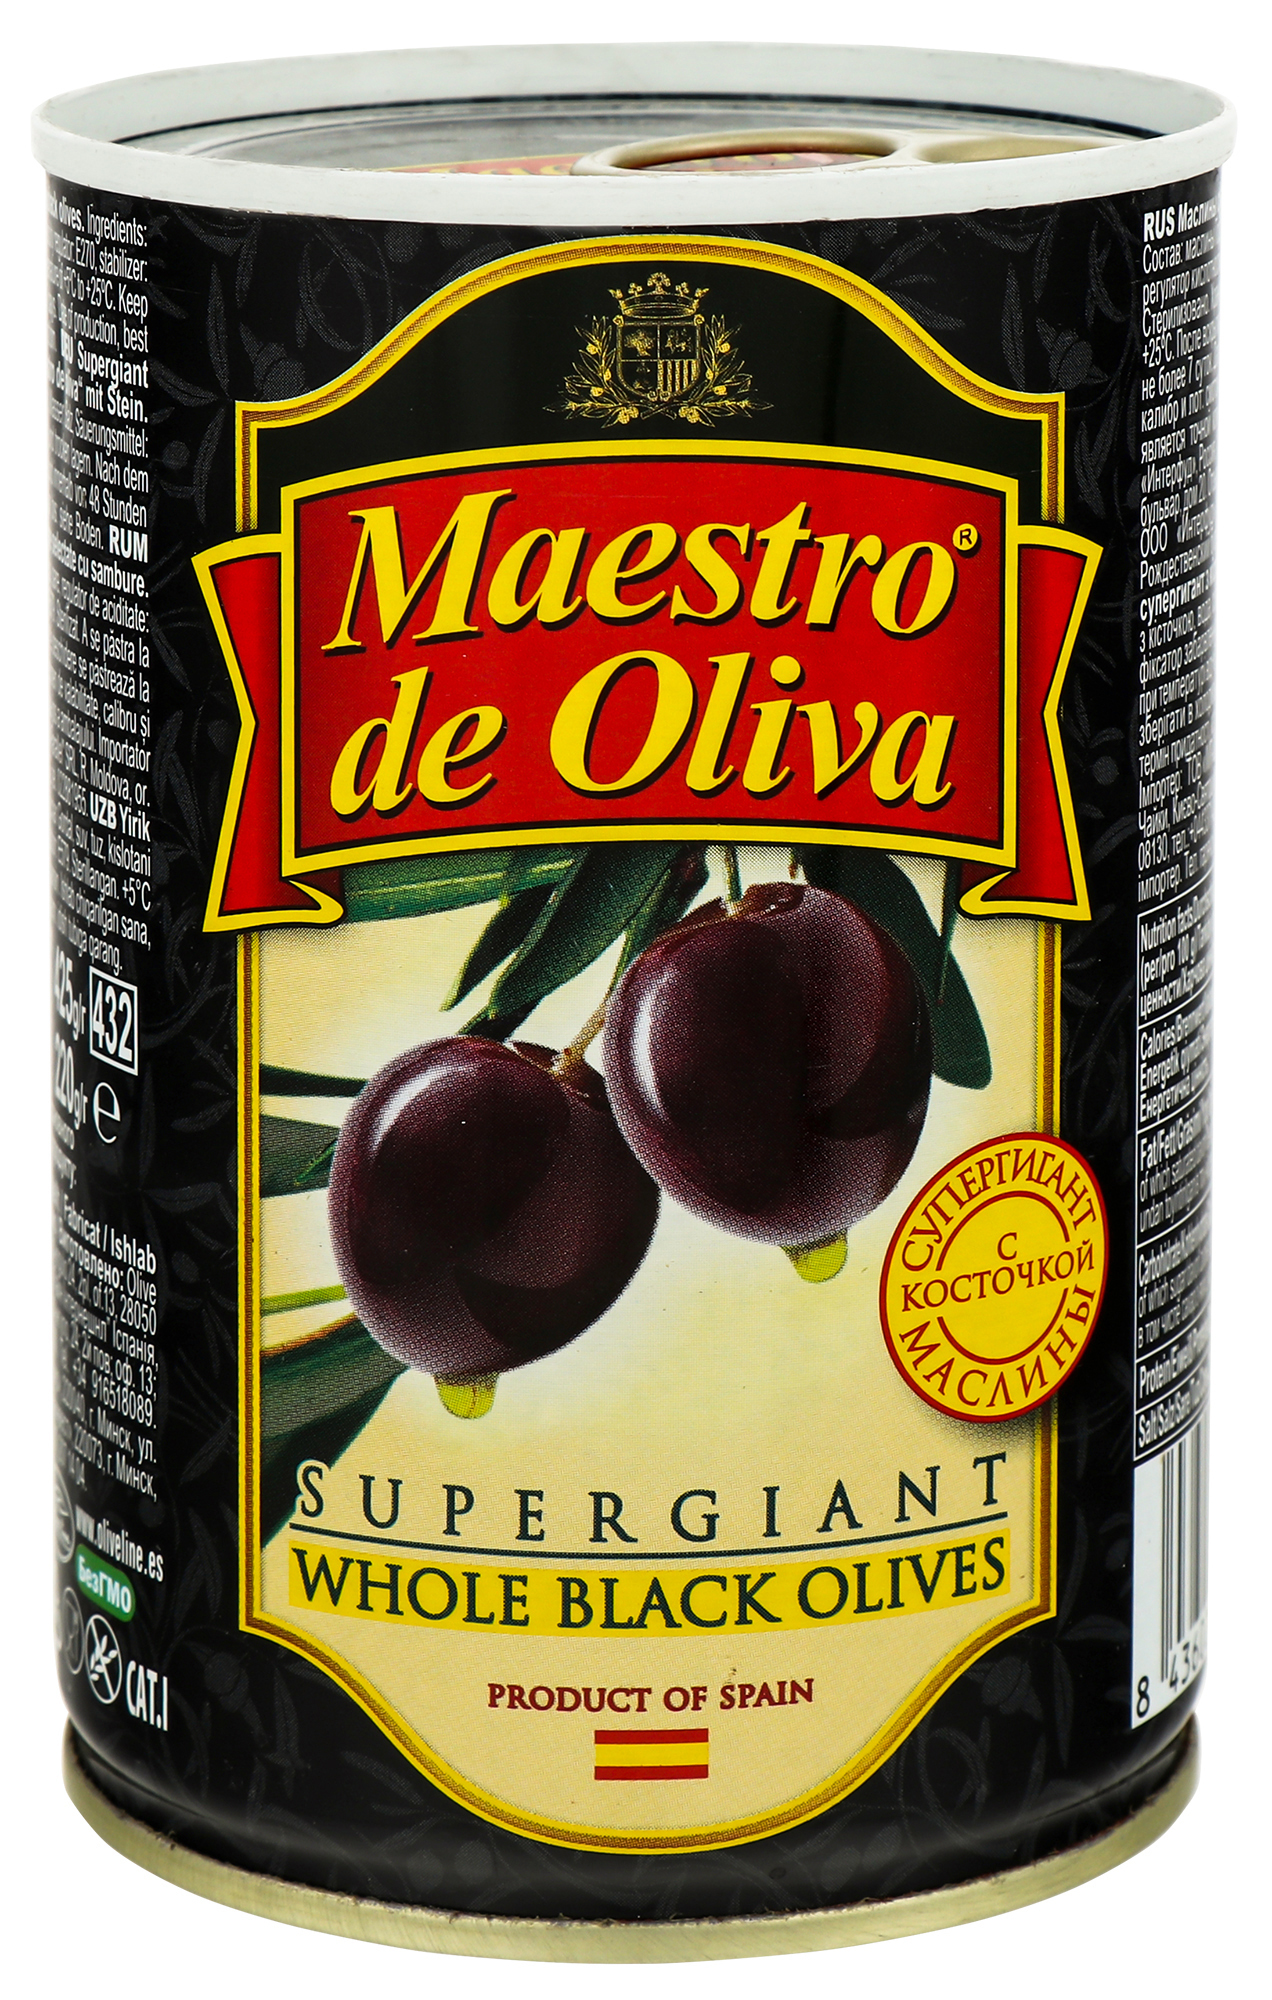 Olives Maestro de Oliva Super Giant 400ml